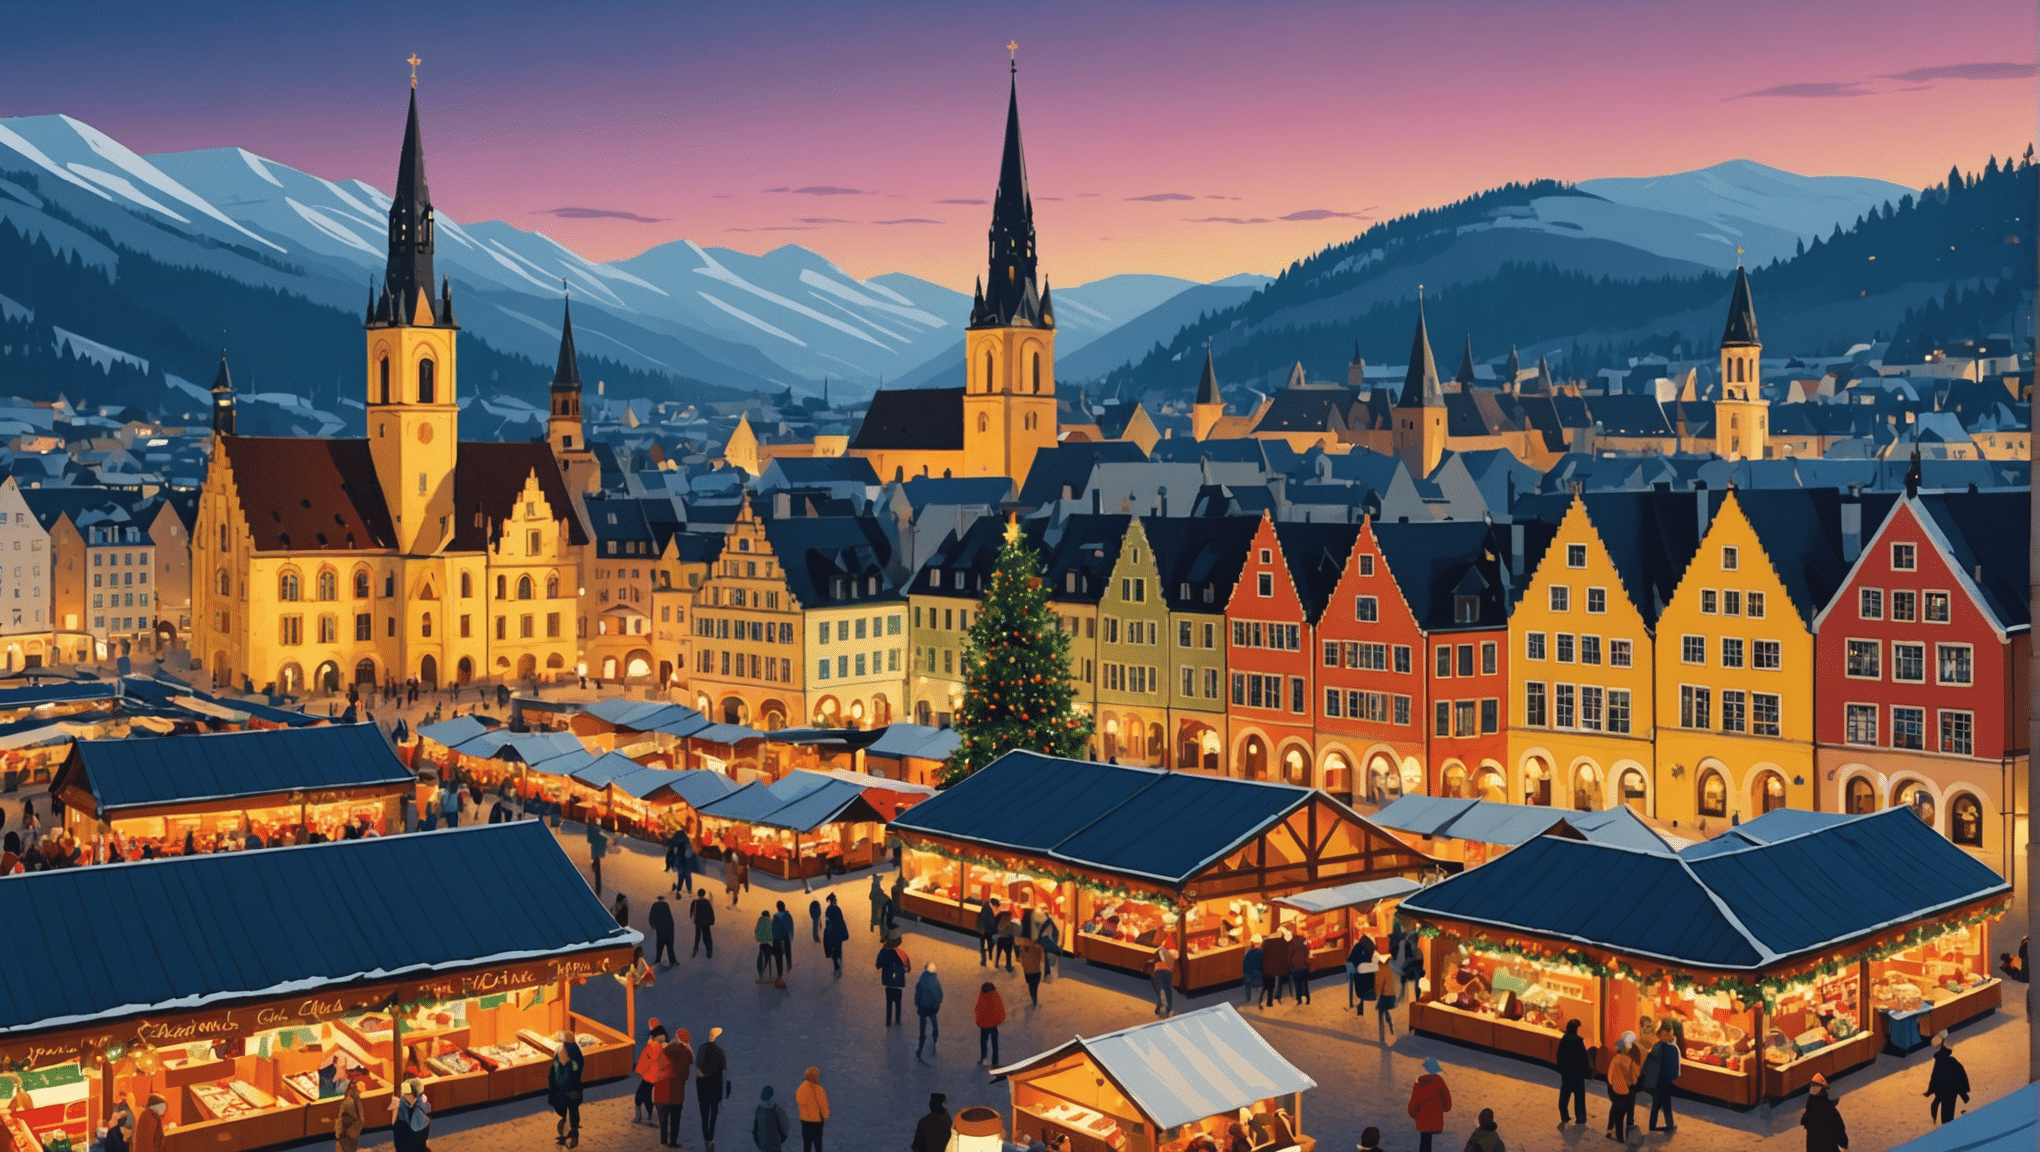 اكتشف أروع أسواق عيد الميلاد في أوروبا وانغمس في سحر الموسم بإضاءاته ونكهاته اللذيذة وحرفه التقليدية.